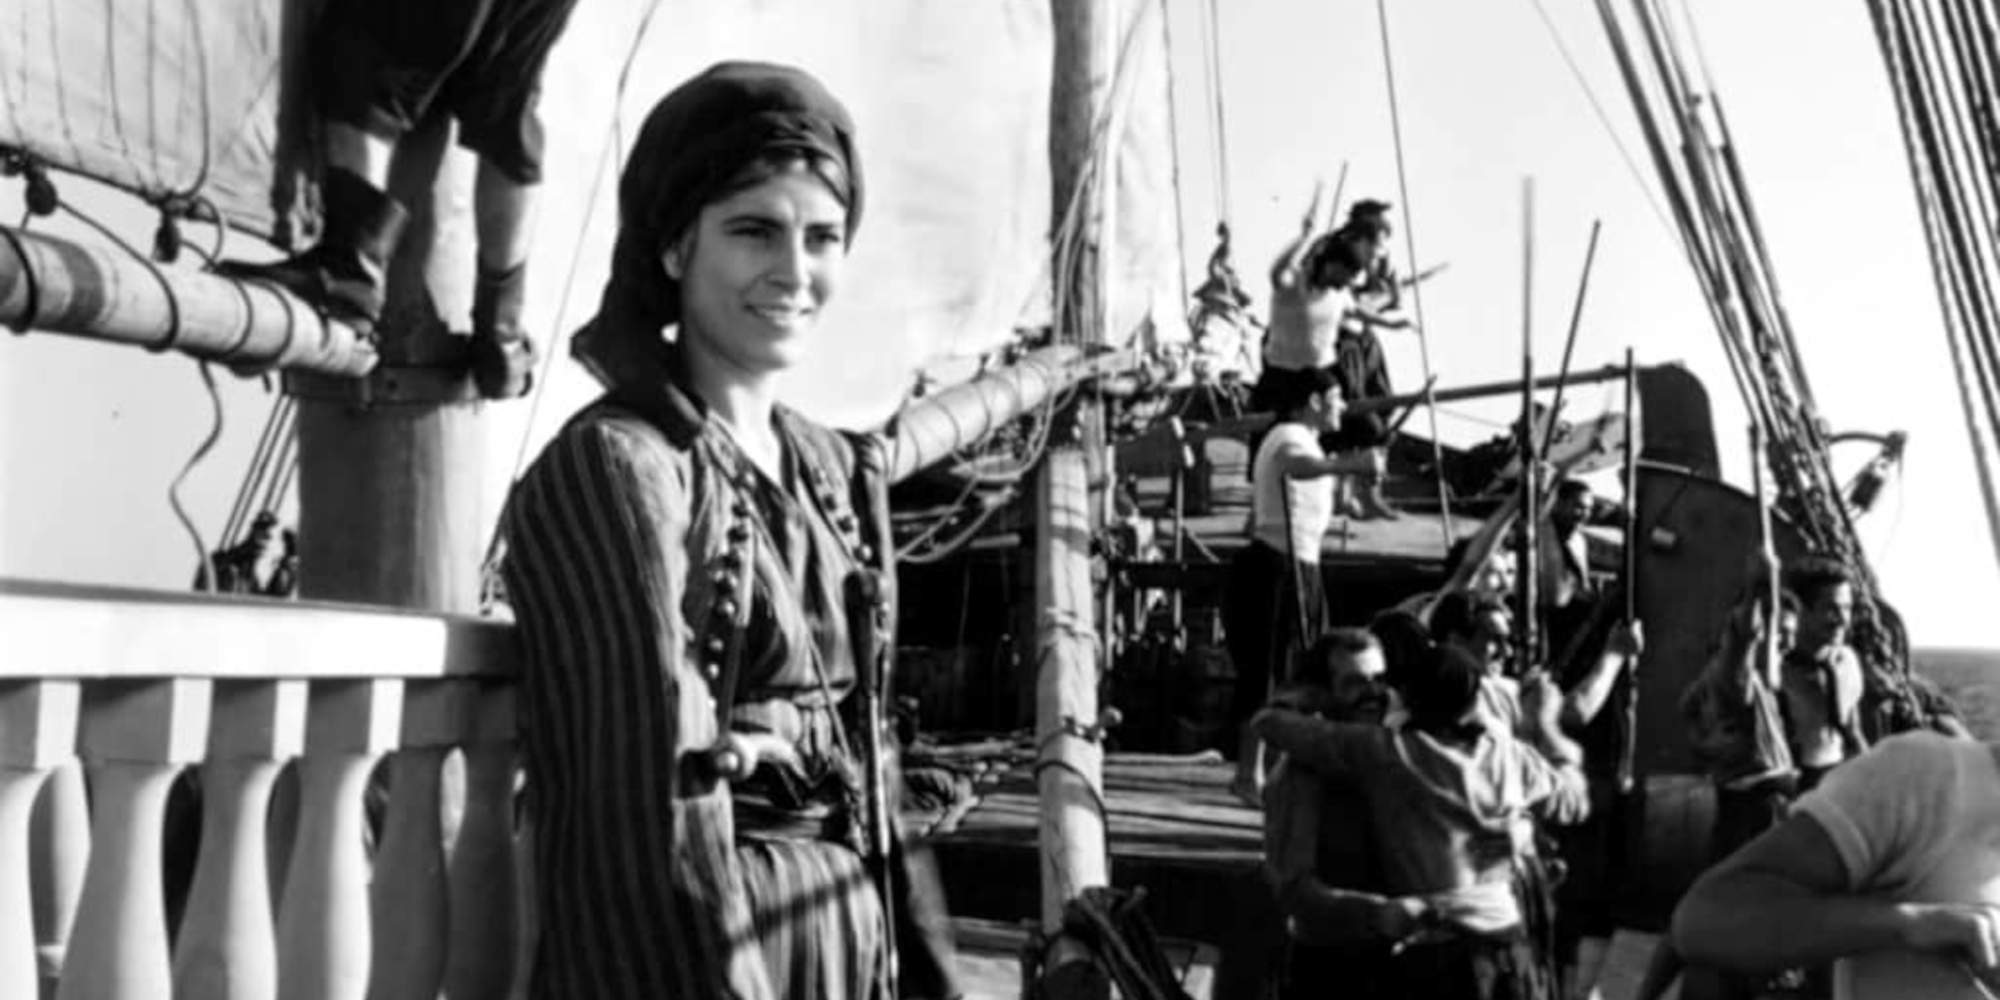 25η Μαρτίου: Όλες οι ελληνικές ταινίες με θέμα την Επανάσταση του '21 - Από τον «χολιγουντιανό» Παπαφλέσσα στην «χαμένη» Μπουμπουλίνα (εικόνες & βίντεο)